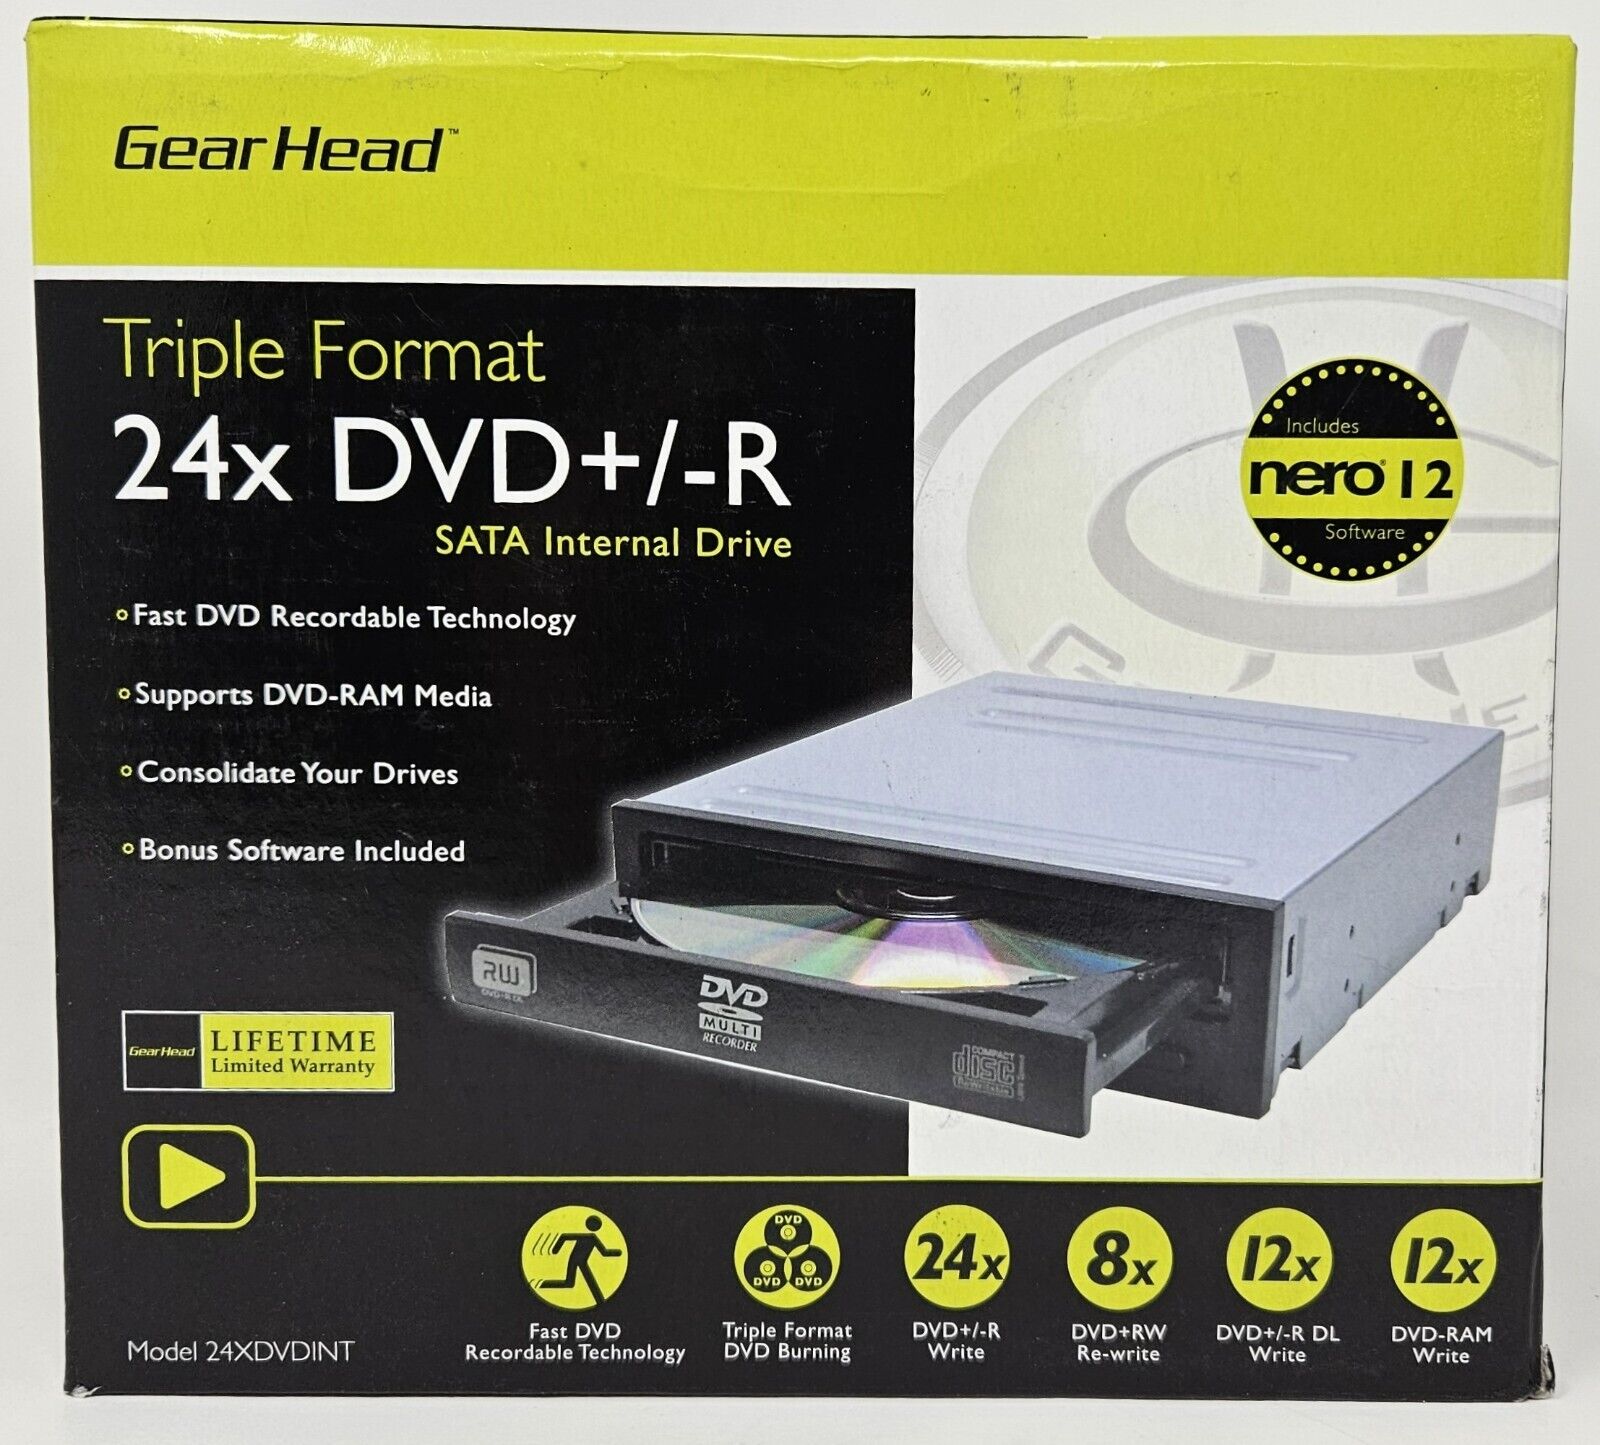 Gear Head 24XDVDINT Triple Format 24X DVD+/-R SATA Internal Drive